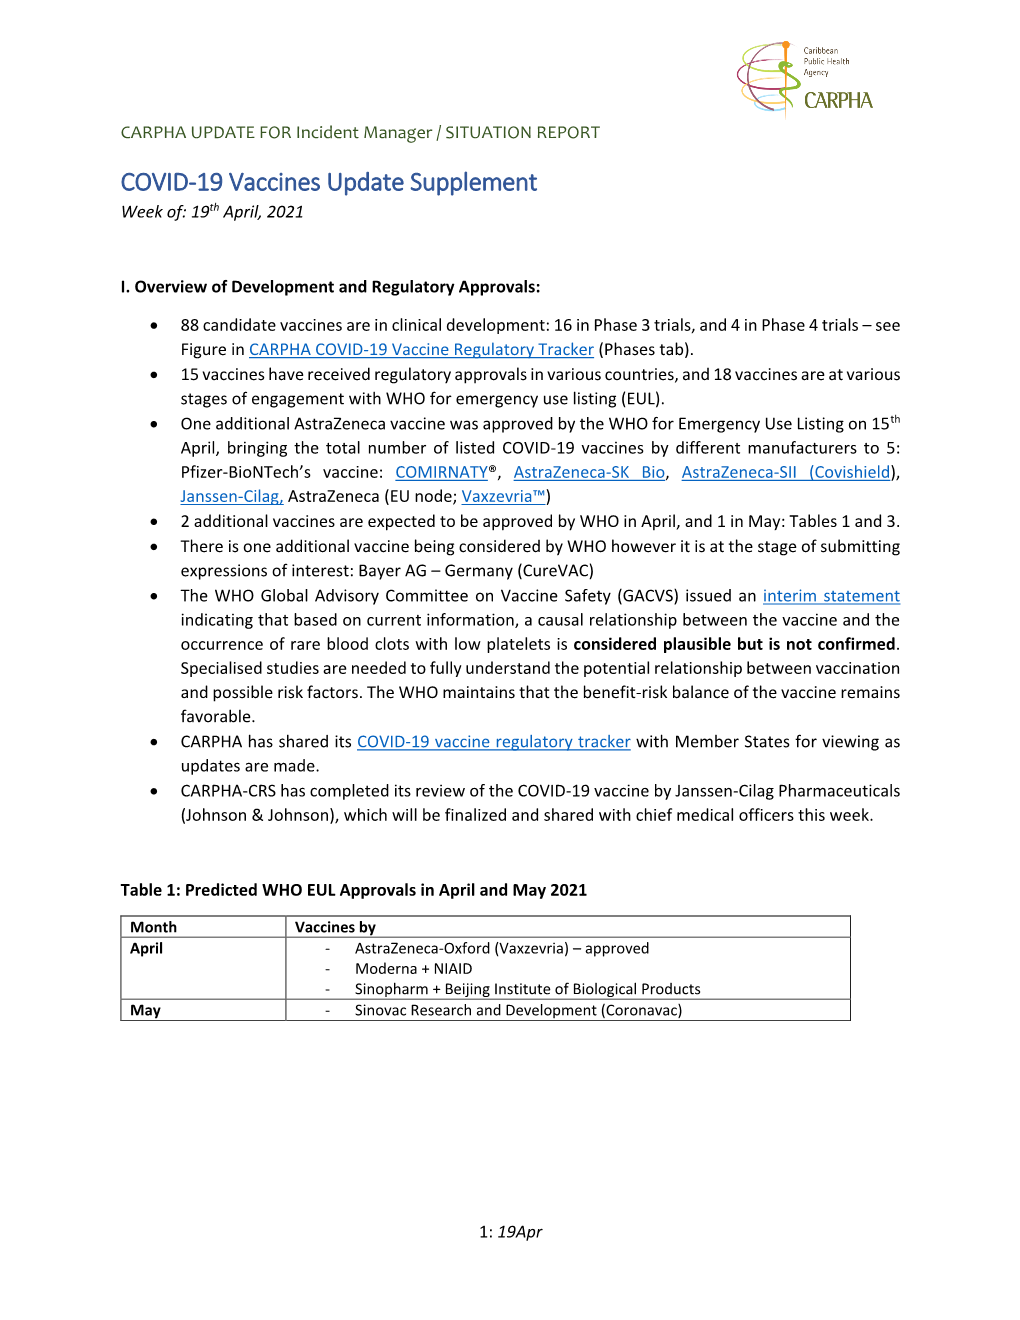 CARPHA COVID-19 Vaccine Update 015 April 19, 2021